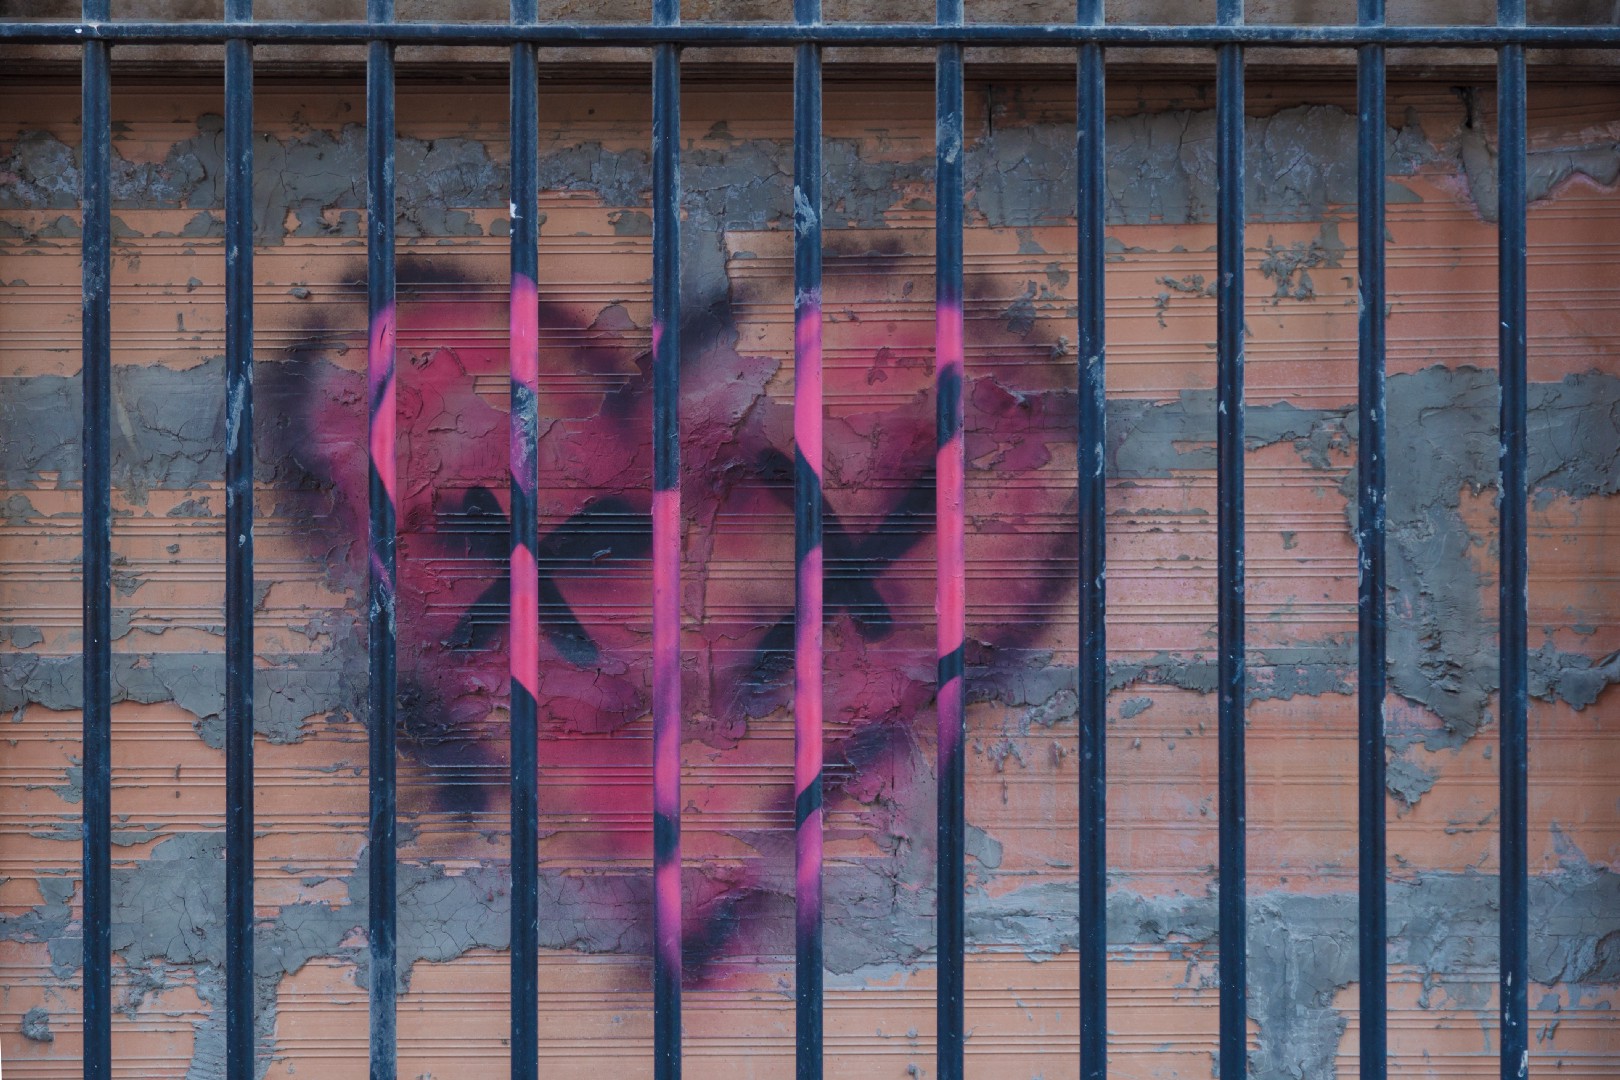 عشق و رابطه در زندان؛ «مت بازی» اسم رمز سرکوب/رضوانه محمدی